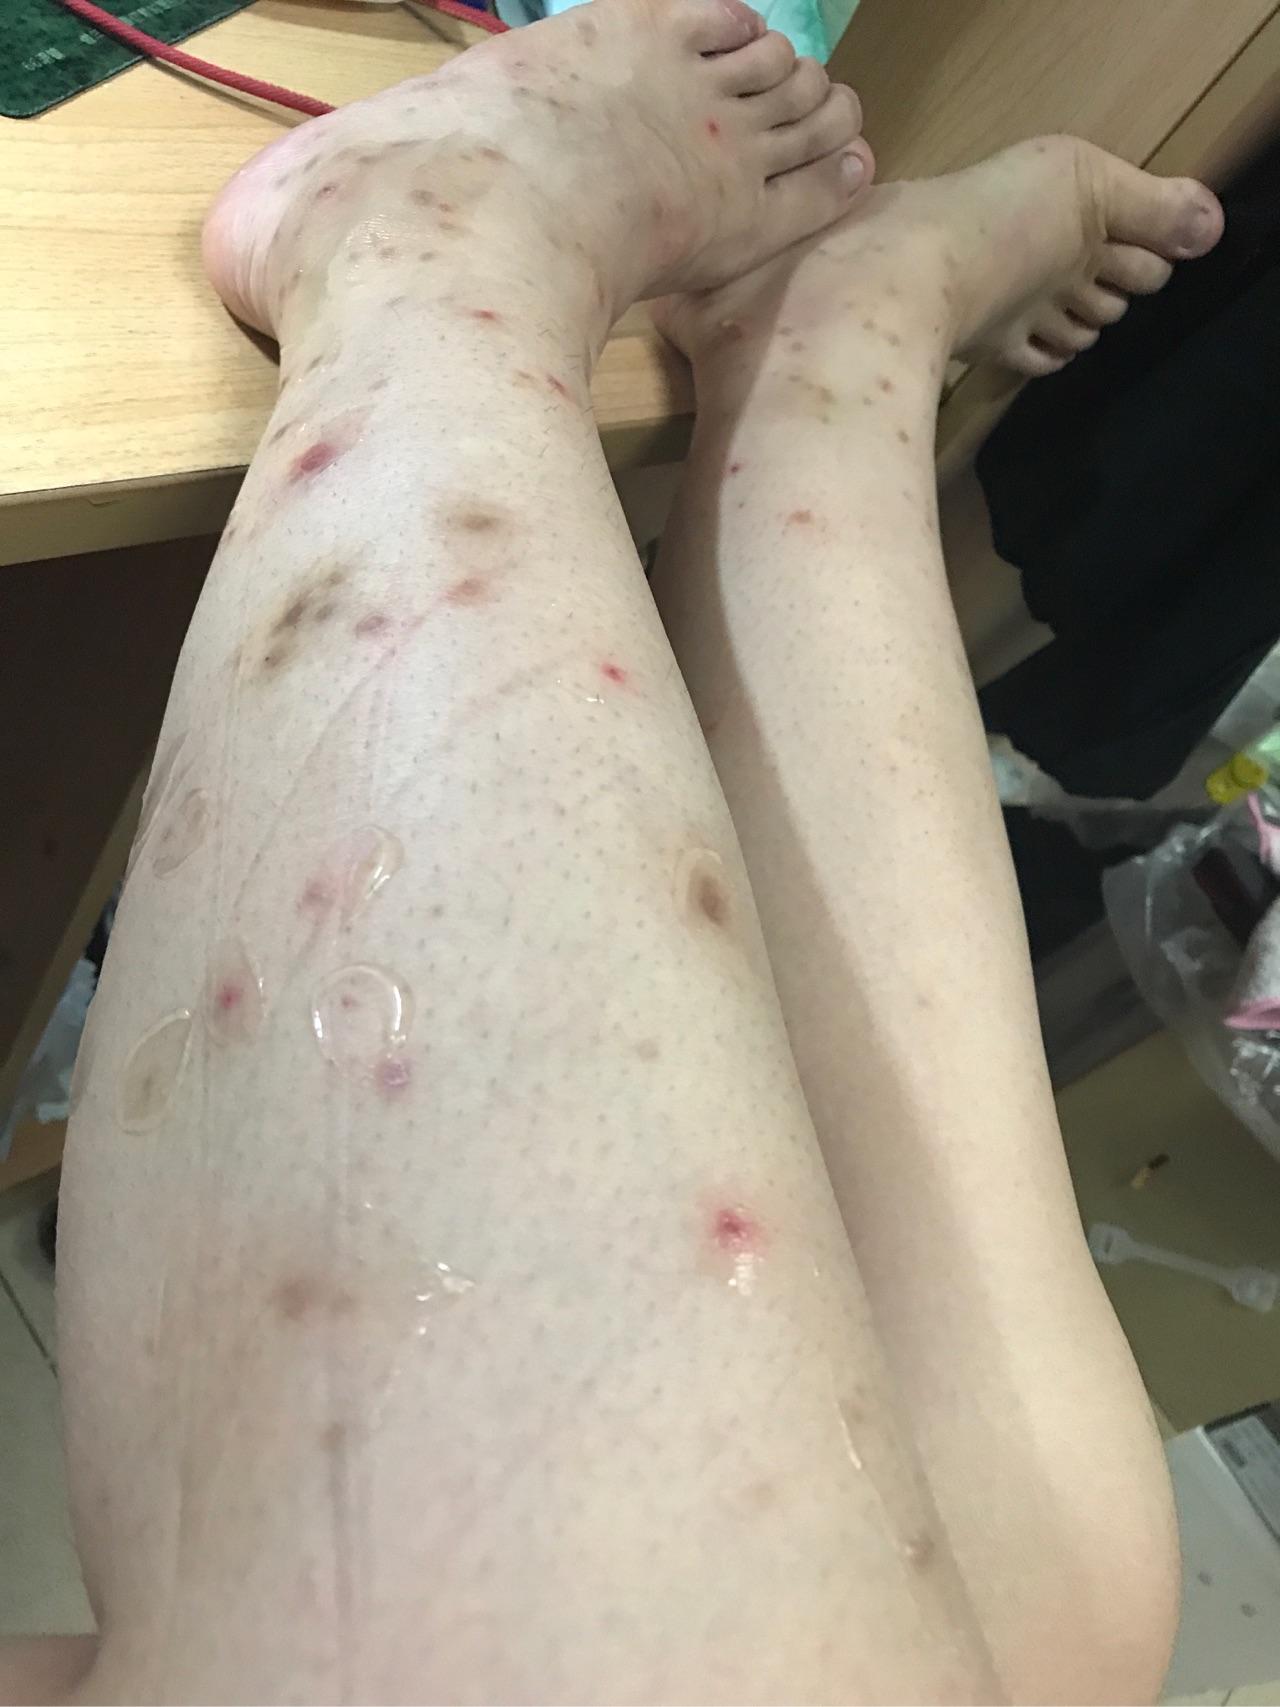 疤痕体质被蚊子咬图片图片